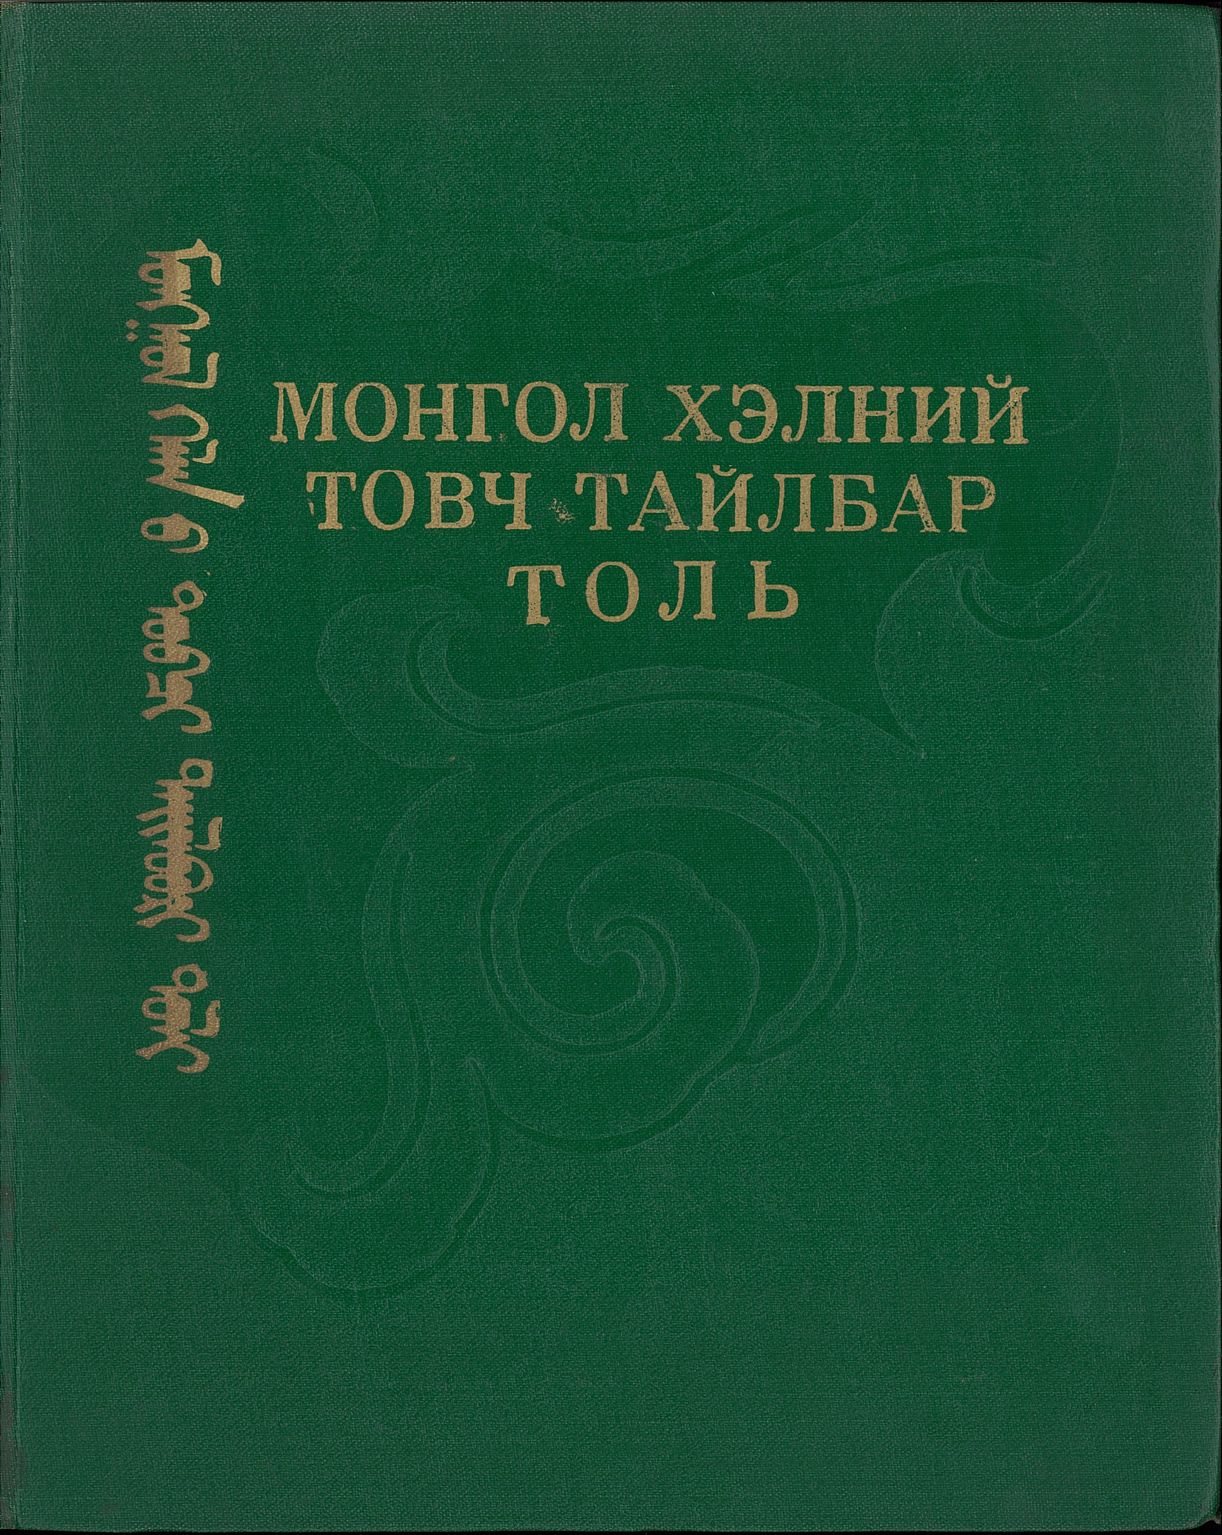 モンゴル語辞典 使用説明